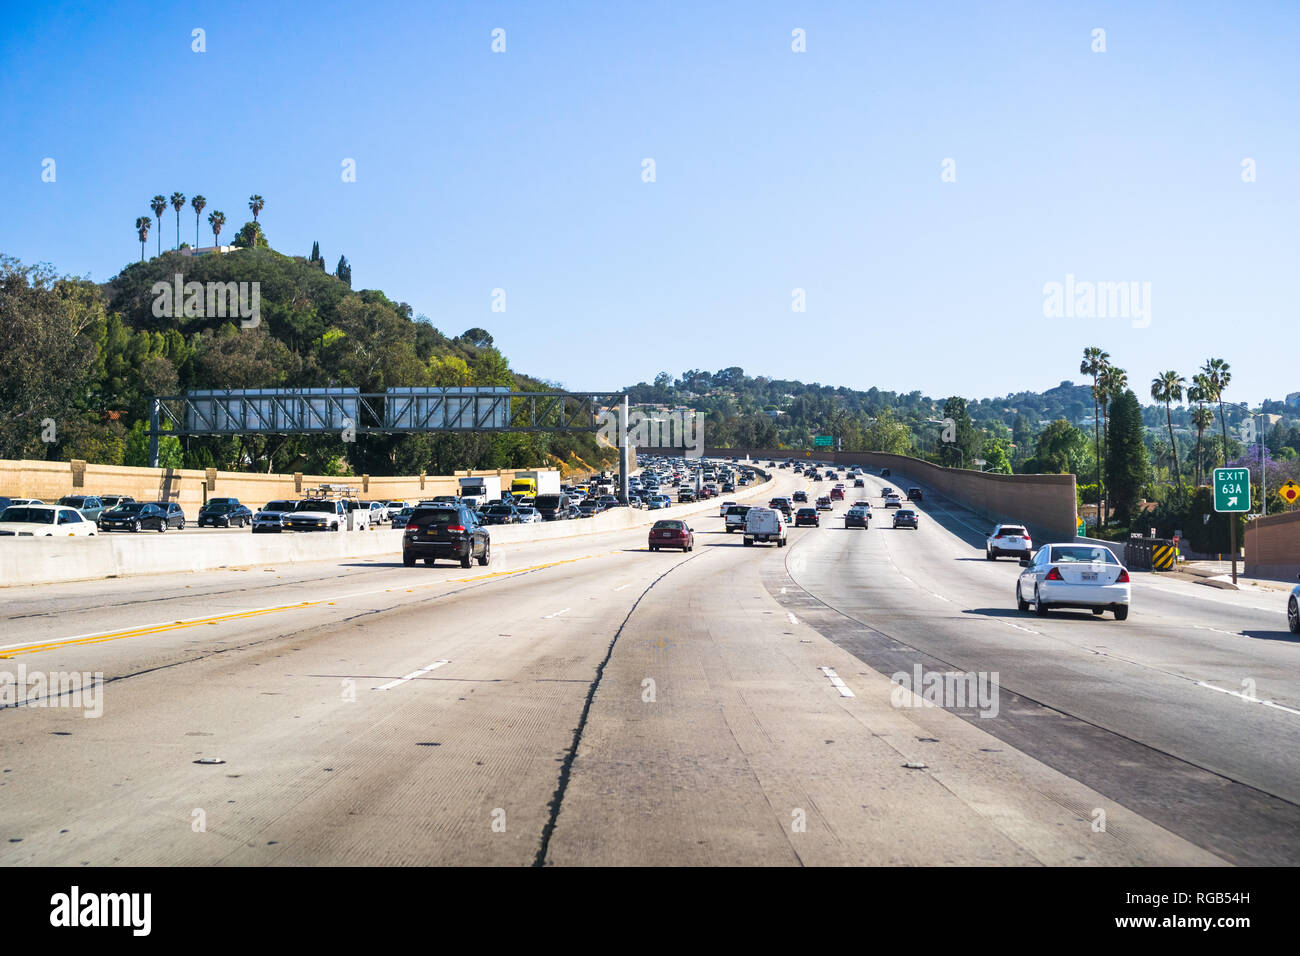 Giugno 8, 2018 Los Angeles / CA / STATI UNITI D'AMERICA - Ampia autostrada andando verso la città; pesante, rallentare il traffico in movimento nella direzione opposta Foto Stock